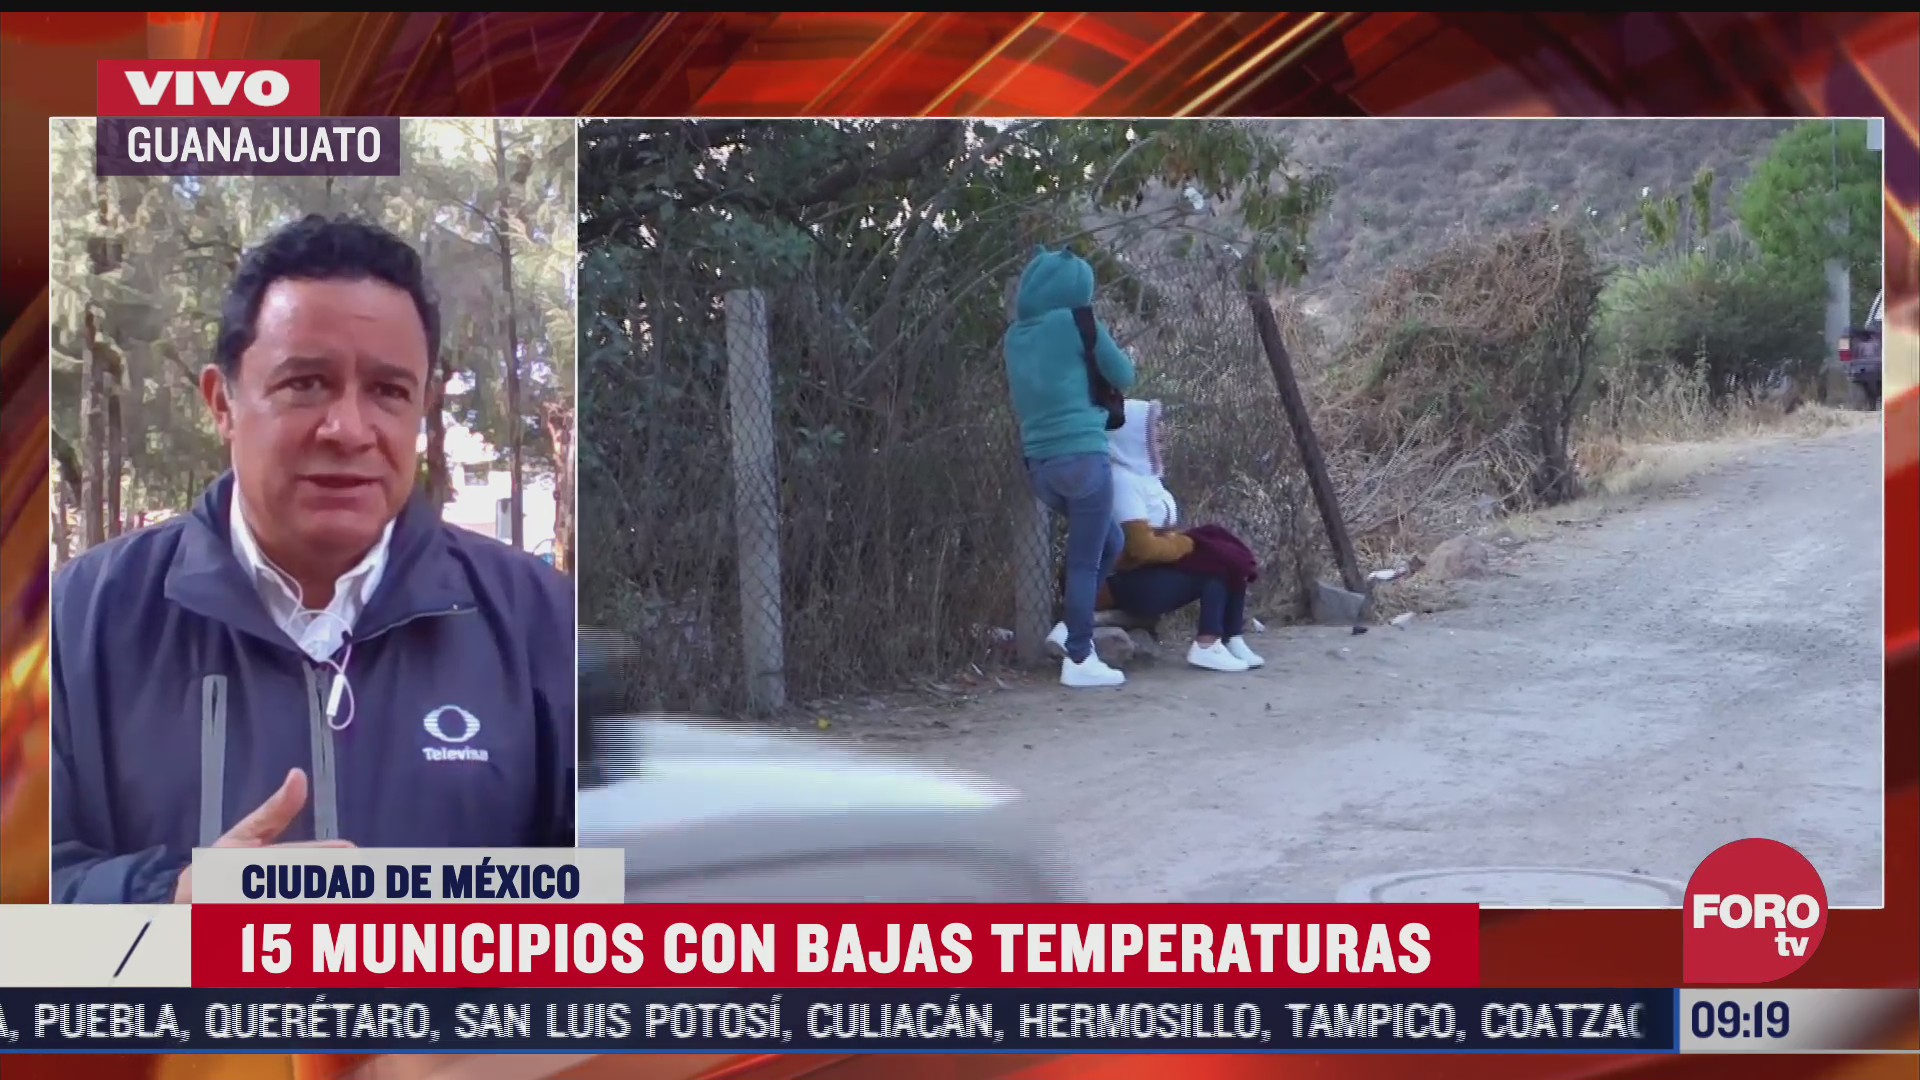 termometro registro temperaturas bajo cero en comunidades de guanajuato